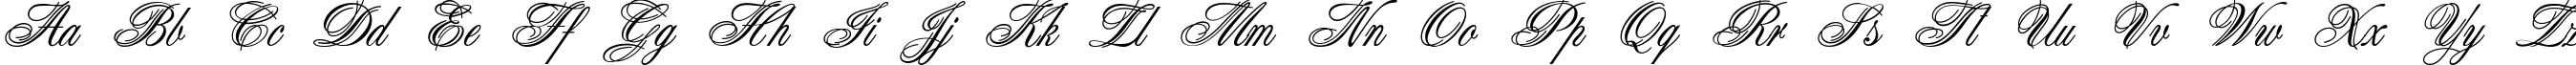 Пример написания английского алфавита шрифтом Connetable